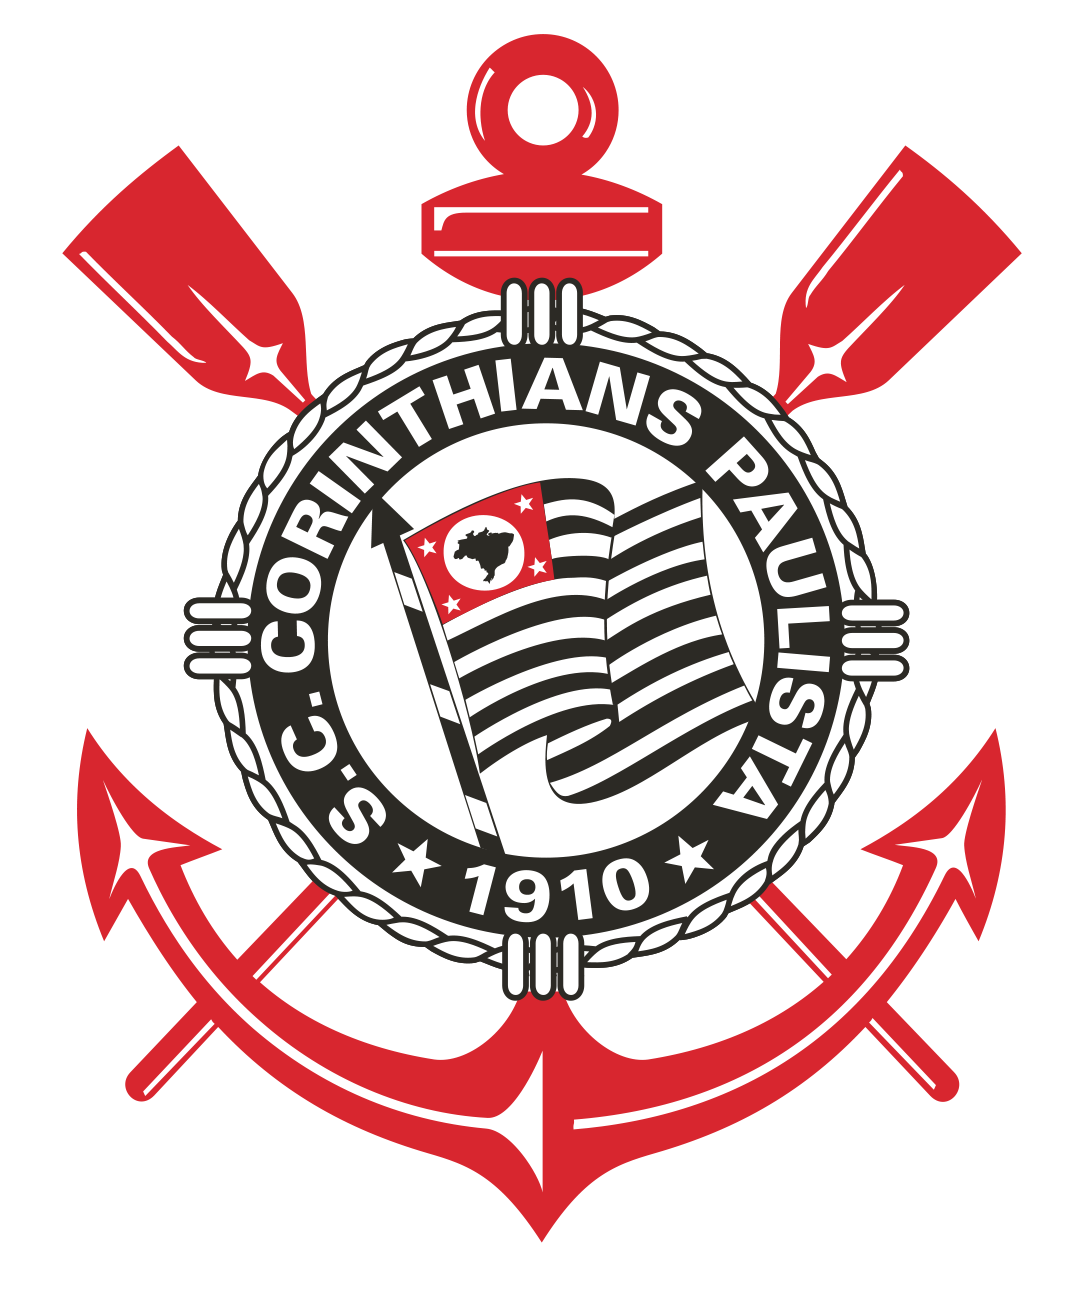 Imagem do escudo do Corinthians